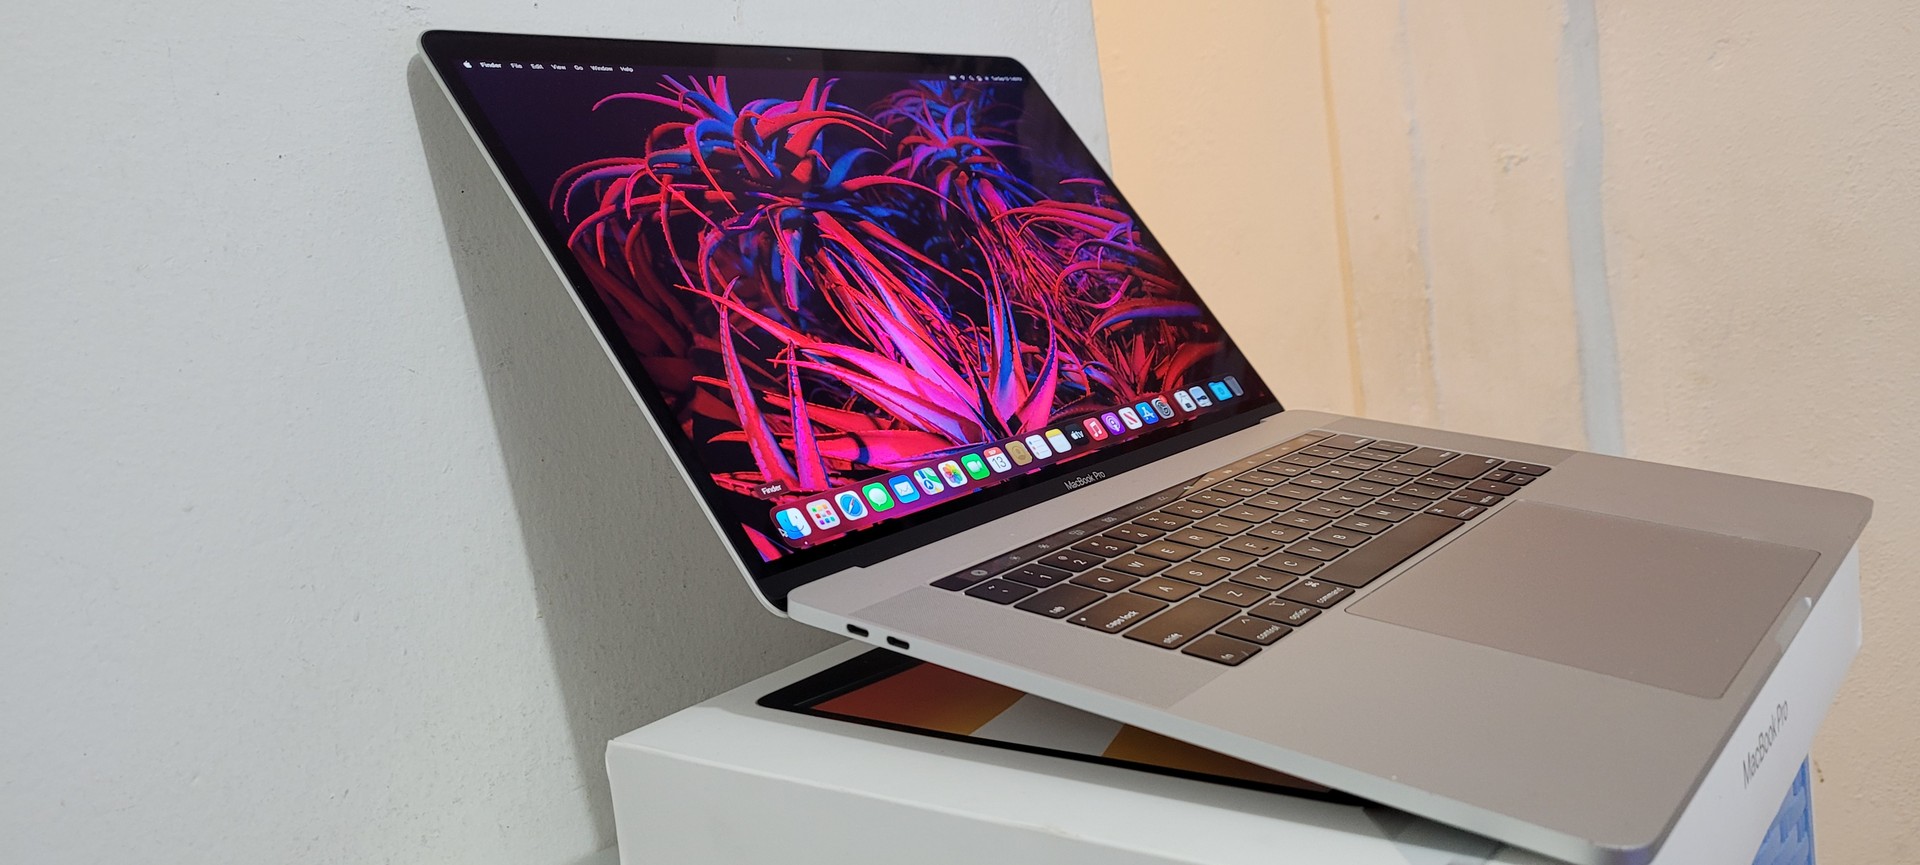 computadoras y laptops - Macbook Pro 15 Pulg Core i7 Ram 16gb en Caja año 2018 0